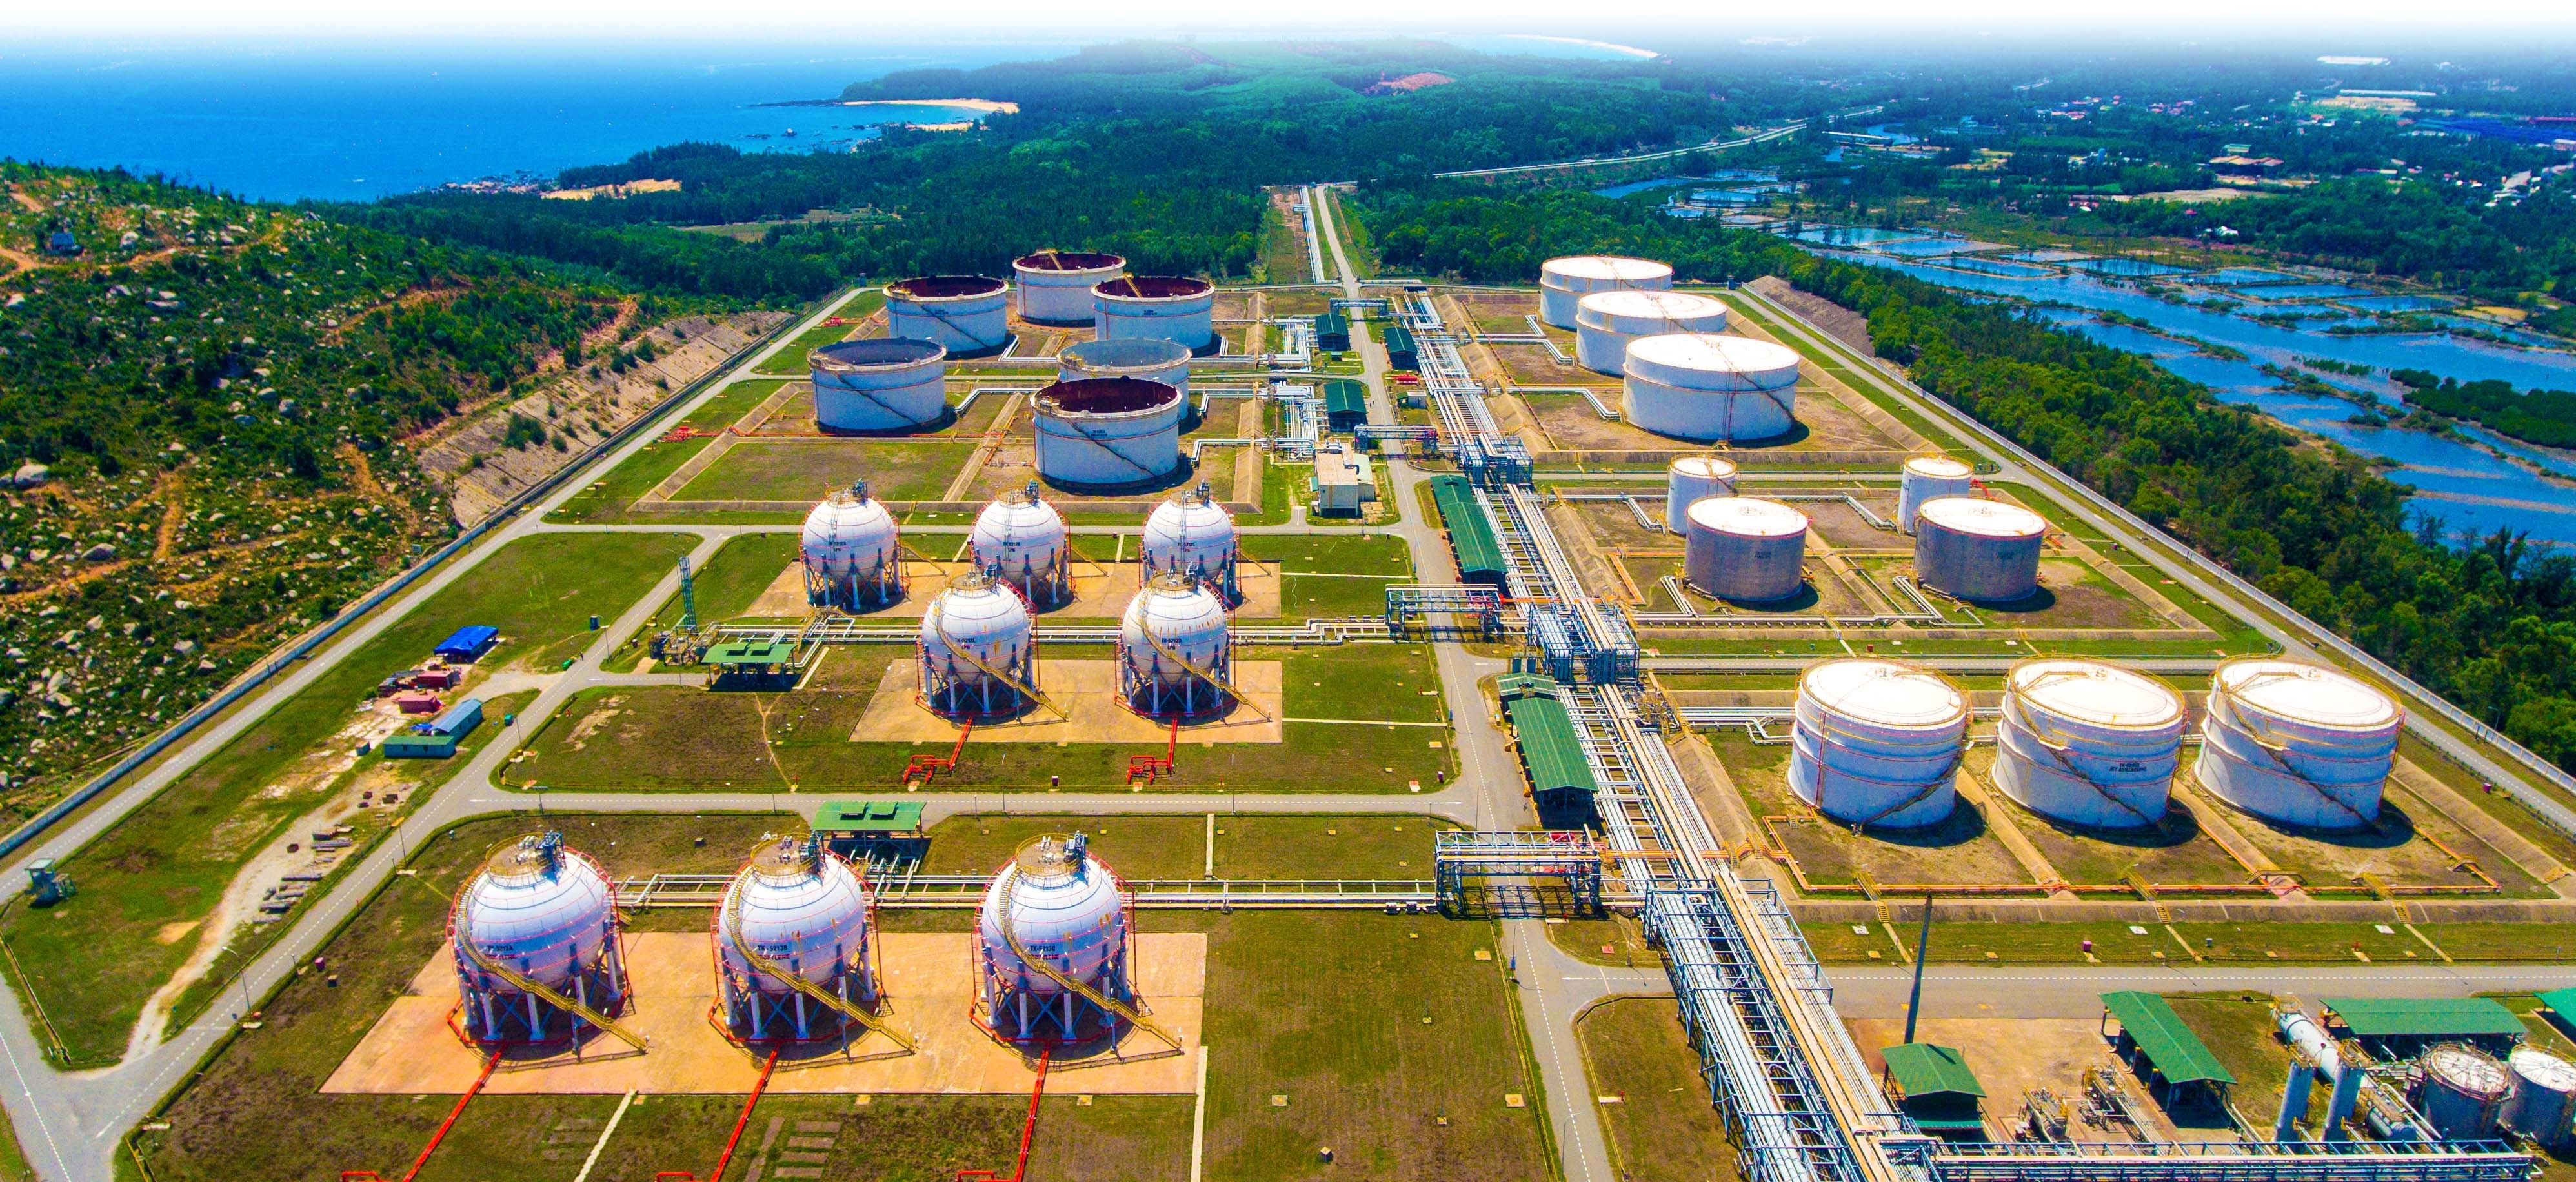 [E-magazine] Chiến lược phát triển hạ tầng dự trữ xăng dầu quốc gia của  Việt Nam trong tương lai